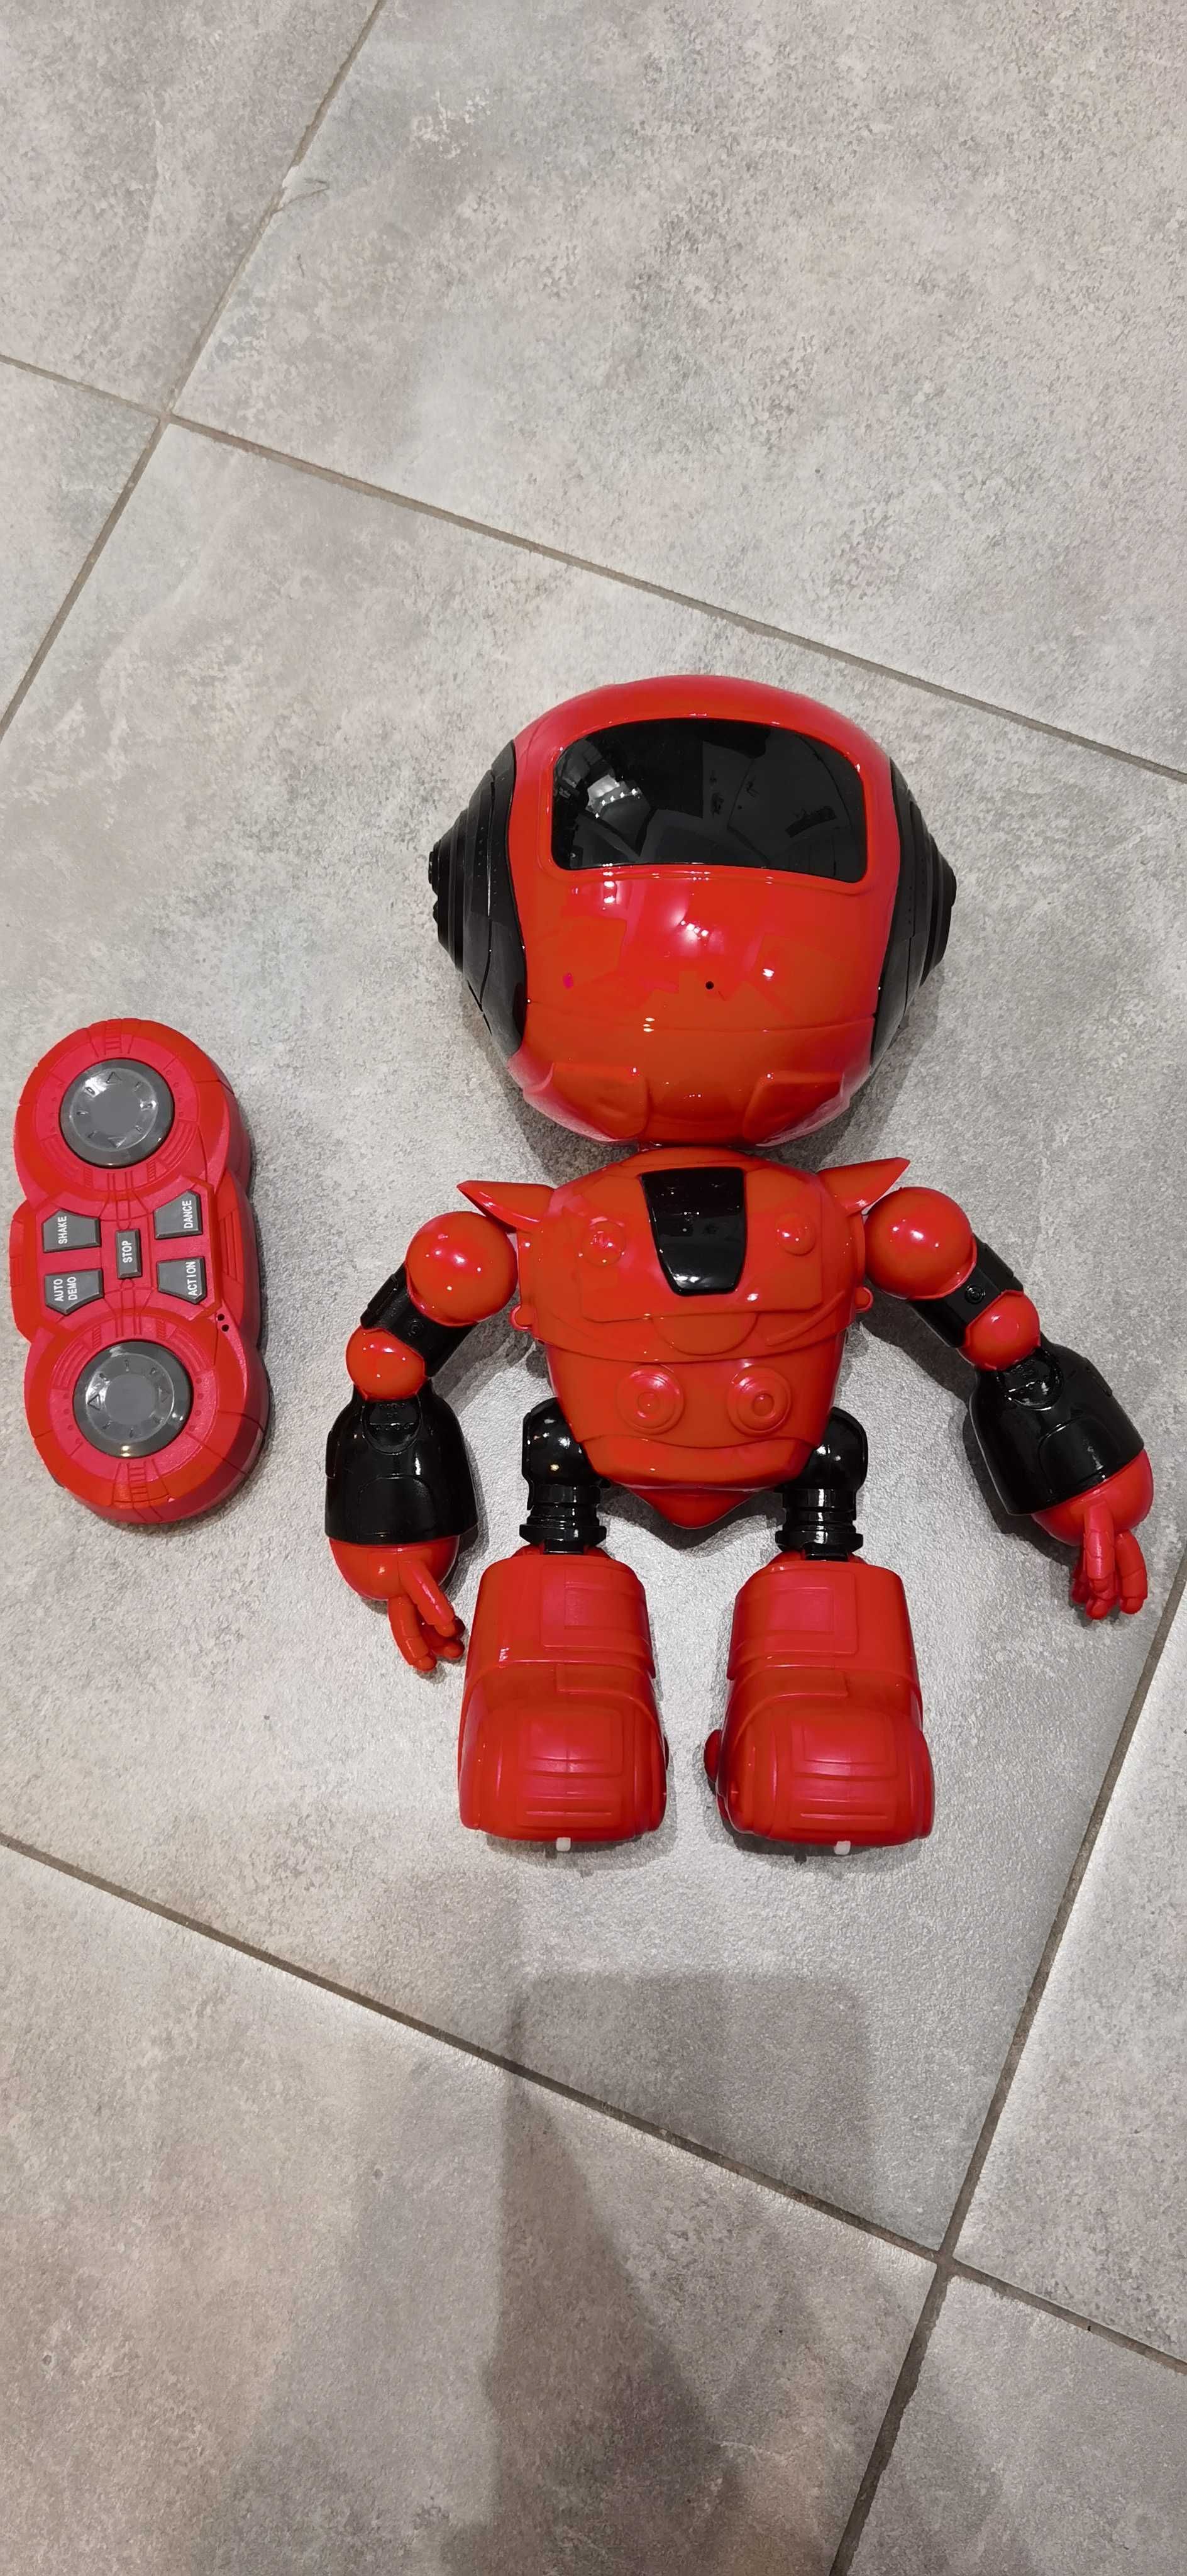 Robot Toys For Boys zabawka